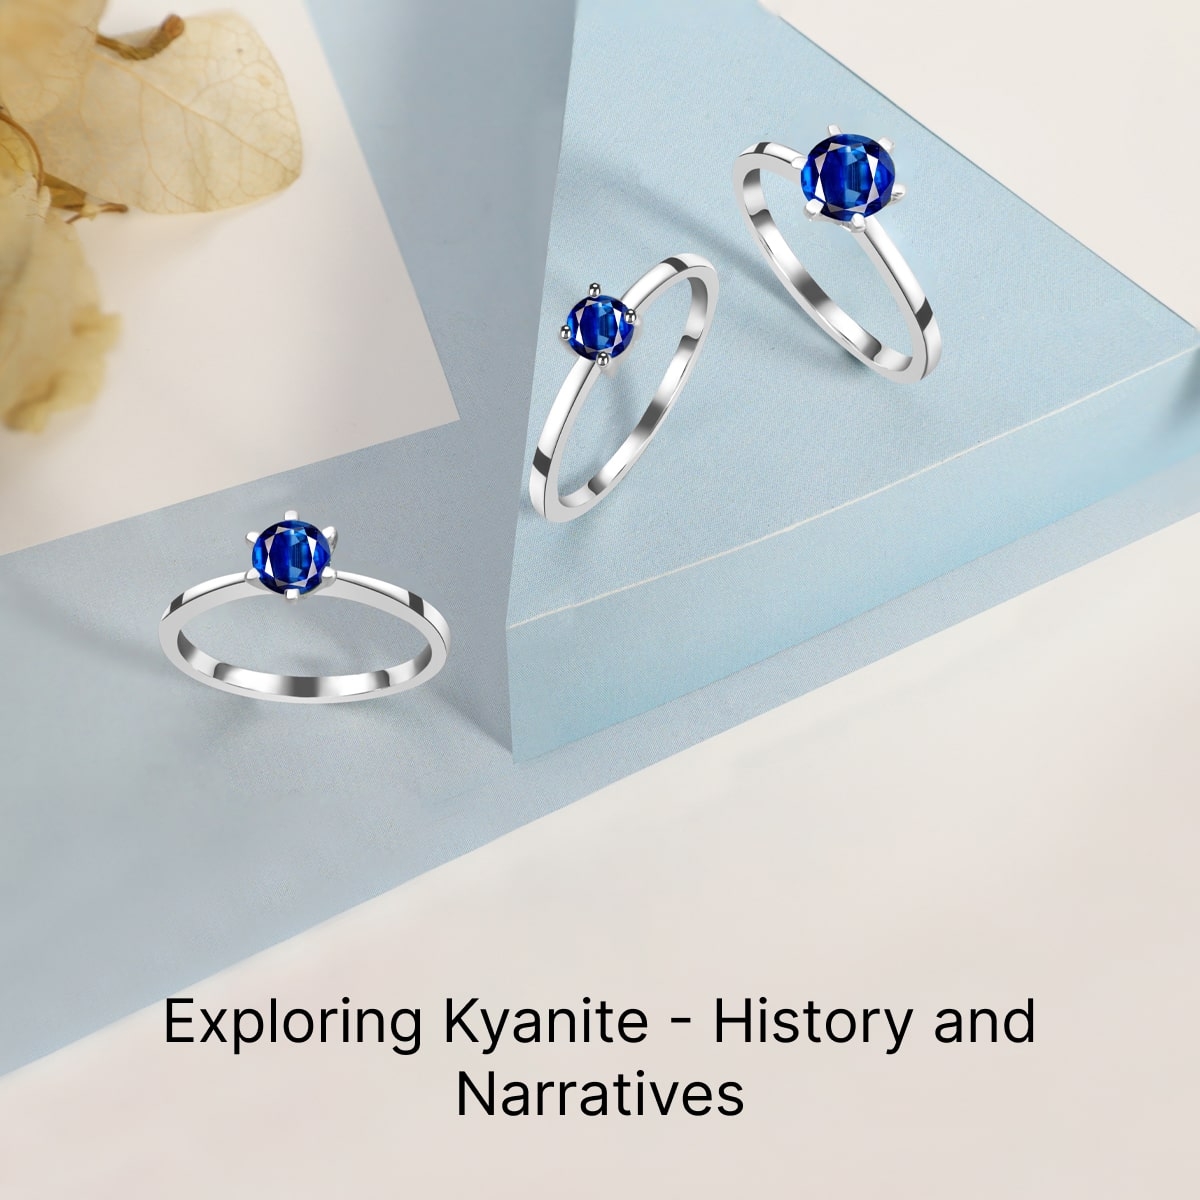 History of Kyanite Stone